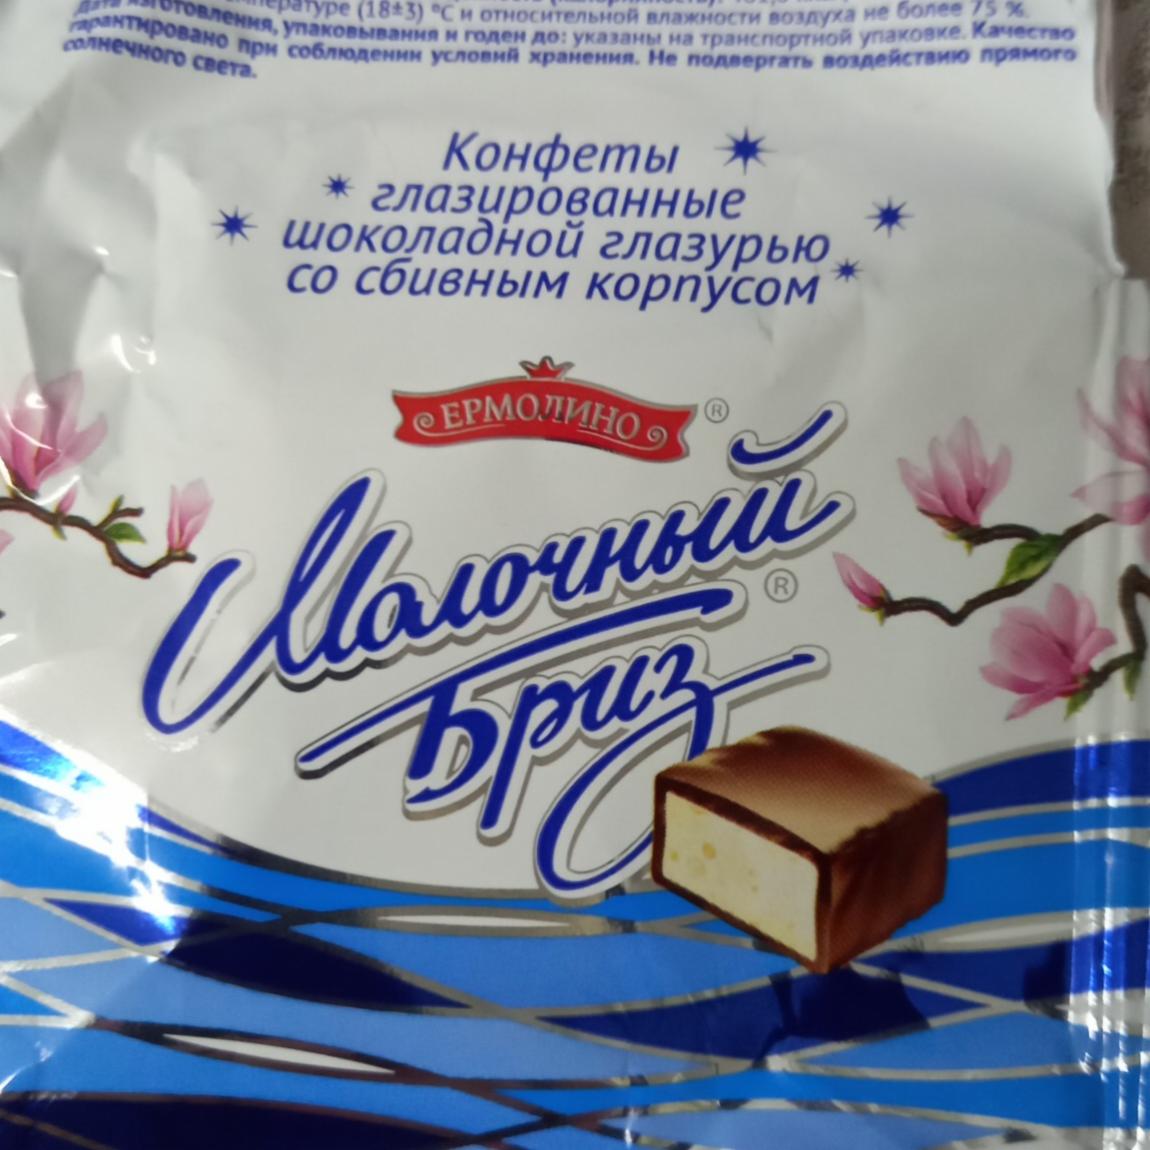 Фото - конфеты молочный бриз Ермолино